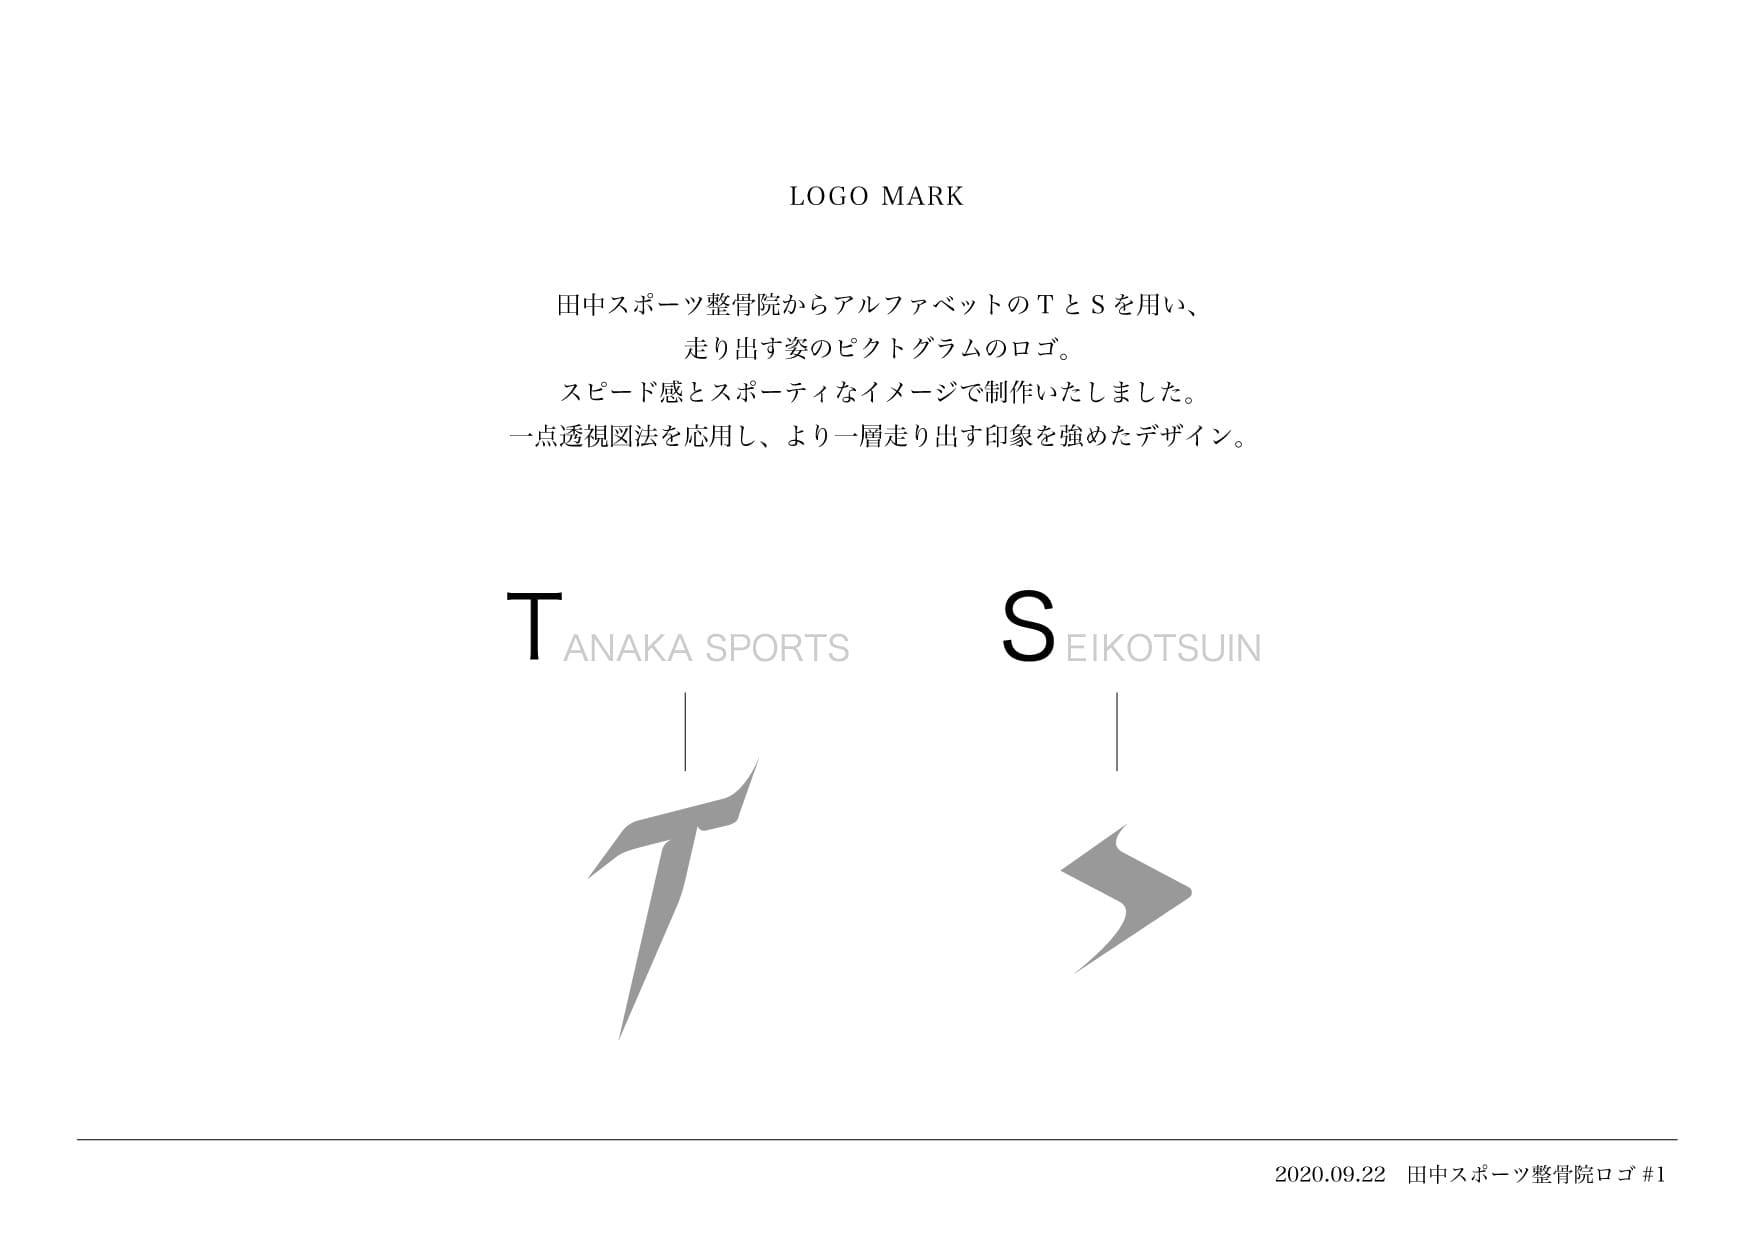 田中スポーツ整骨院のロゴ画像